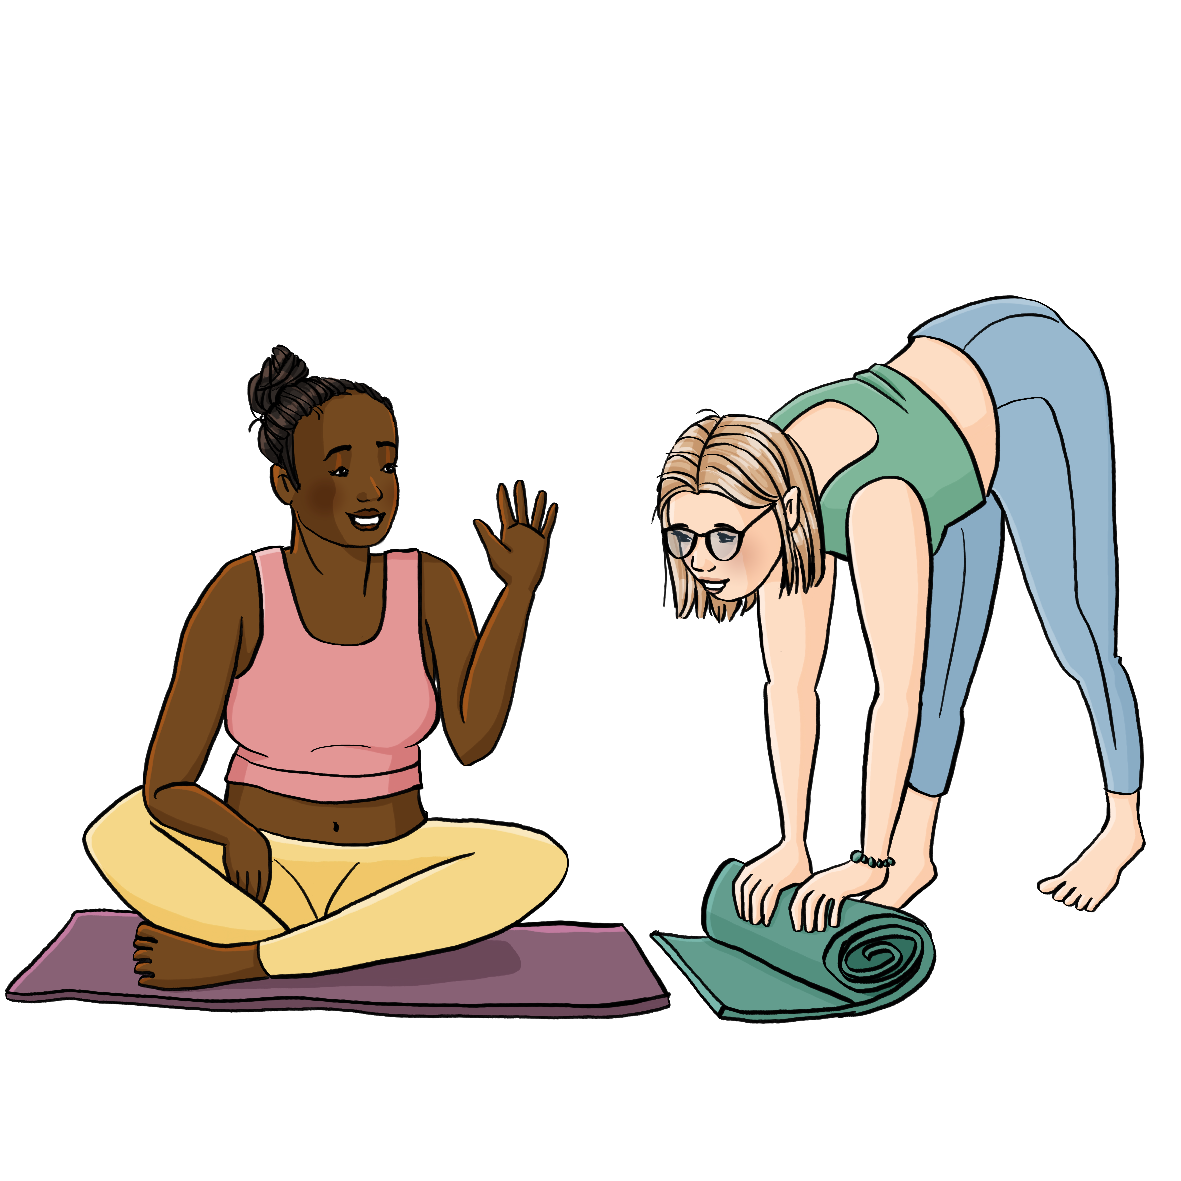 Eine Frau in Sportkleidung sitzt auf einer Yogamatte. Sie hat die Hand grüßend erhoben. Eine andere Frau rollt neben ihr eine Matte aus.